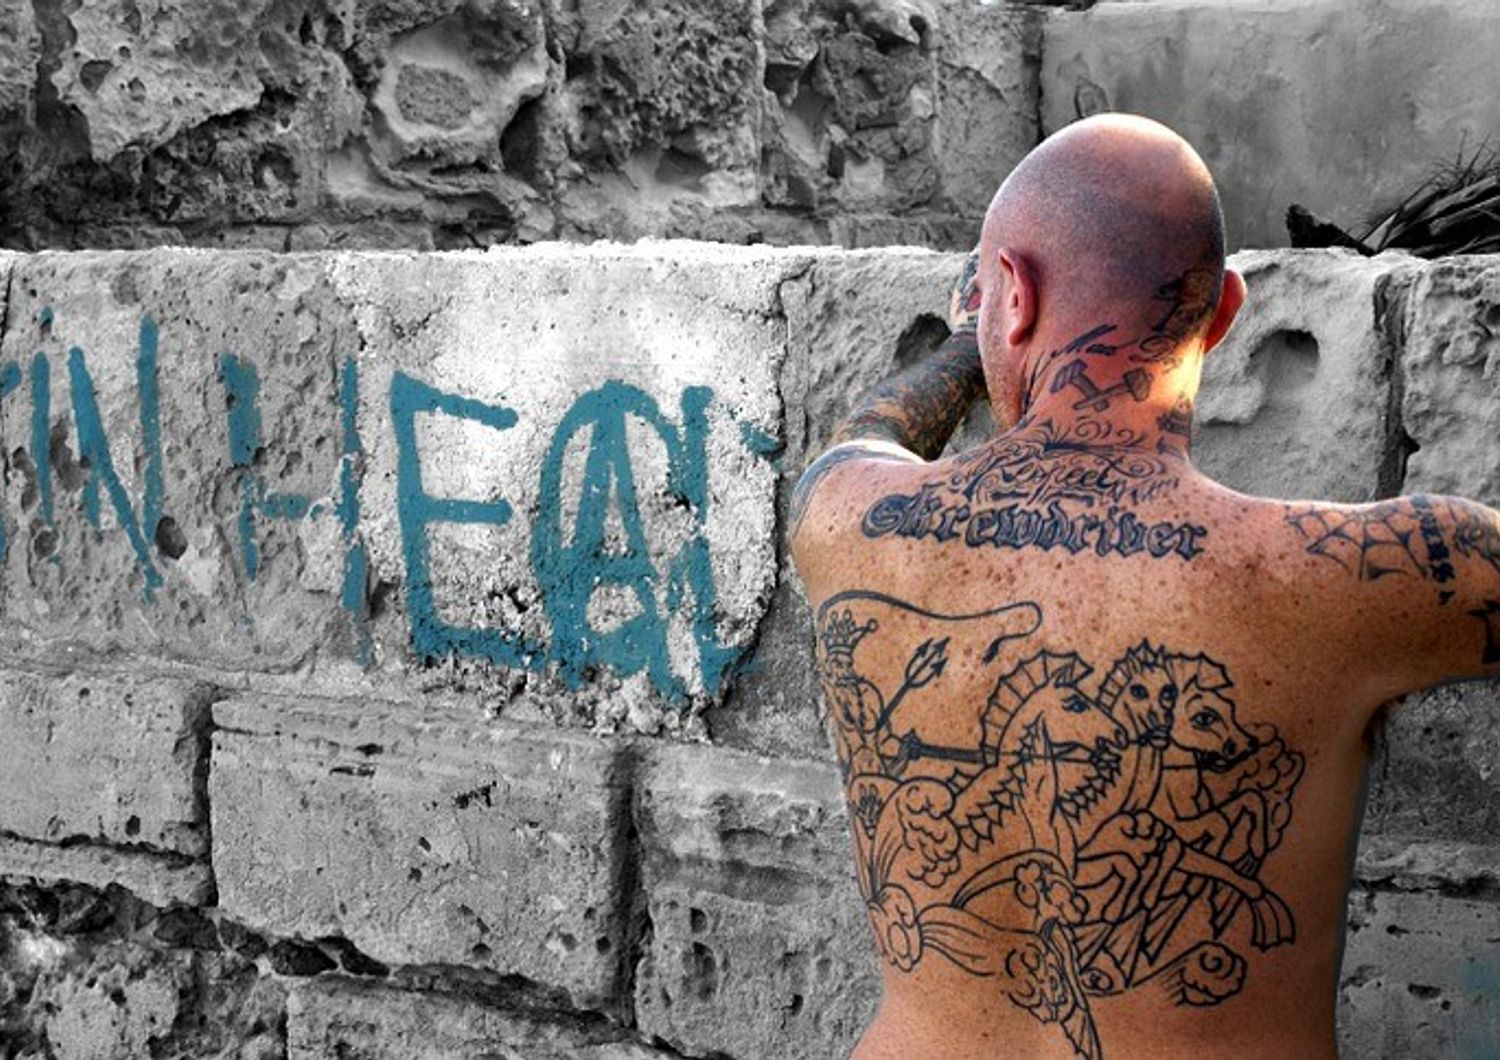 Picchiati da&nbsp;skinheads, la denuncia online di 5 immigrati a Pavia​